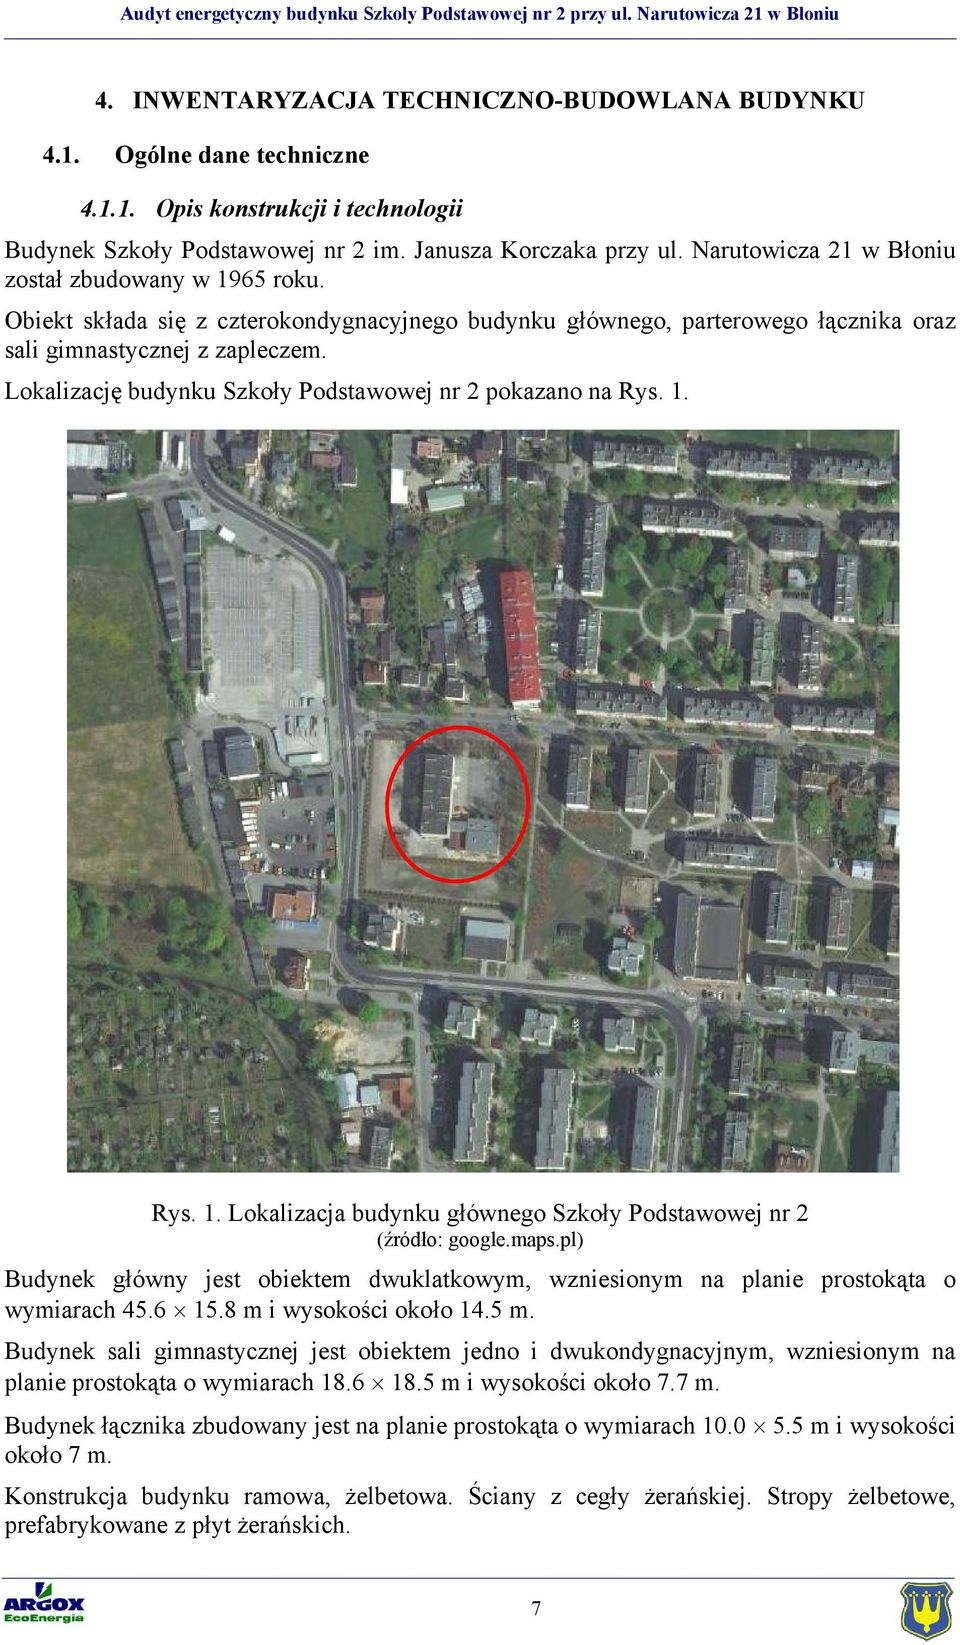 Lokalizację budynku Szkoły Podstawowej nr 2 pokazano na Rys. 1. Rys. 1. Lokalizacja budynku głównego Szkoły Podstawowej nr 2 (źródło: google.maps.